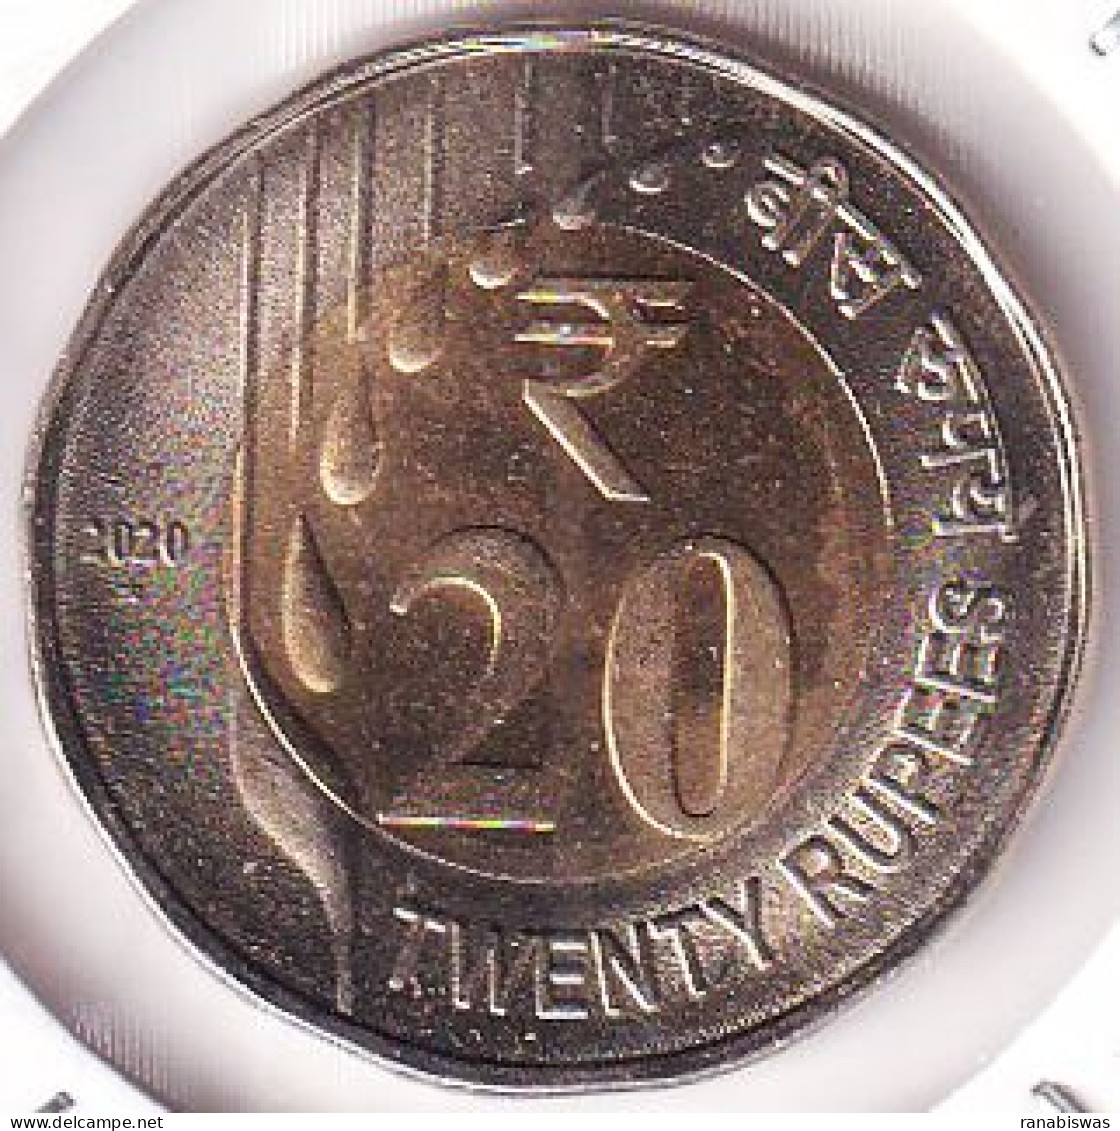 INDIA COIN LOT 438, 20 RUPEES 2020, RAIN DROPS, HYDERABAD MINT, UNC - India